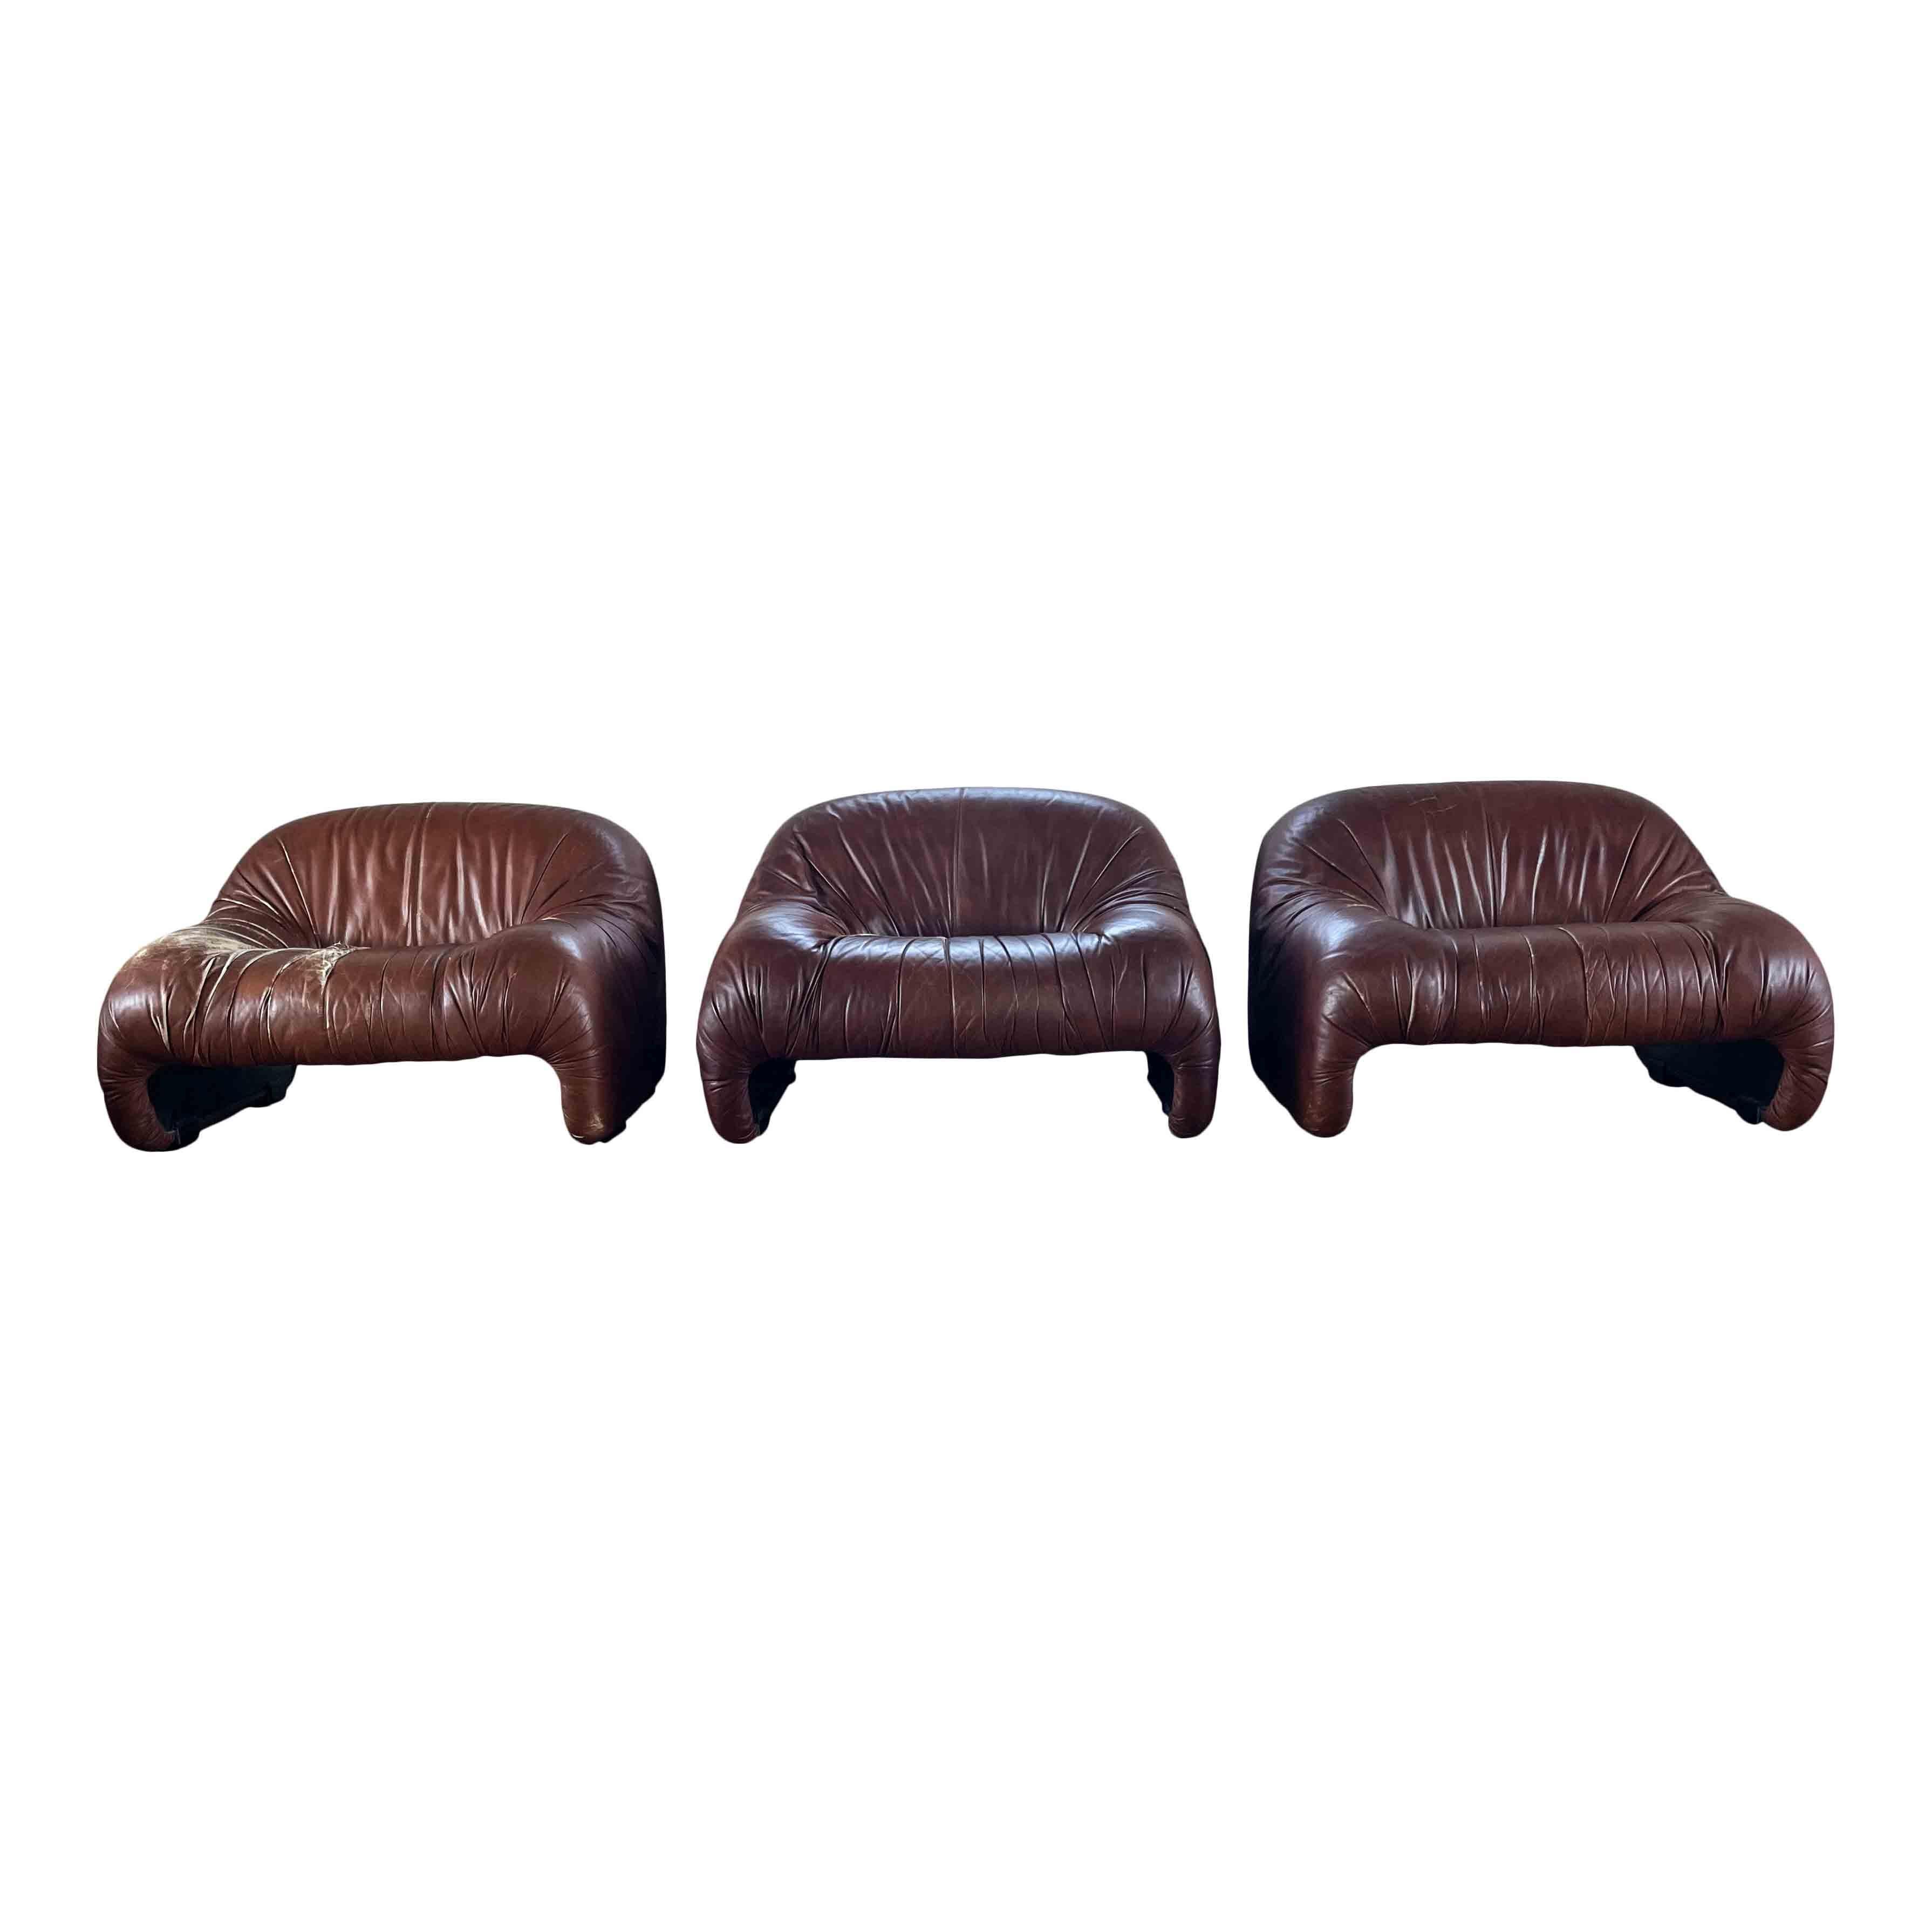 Set bestehend aus drei Bonanza-Sesseln, entworfen von Afra und Tobia Scarpa und produziert vom italienischen Hersteller C&B Italia (heute B&B Italia) im Jahr 1970.

Die Garnitur ist mit schokoladenbraunem Leder bezogen, mit Schaumstoff gepolstert